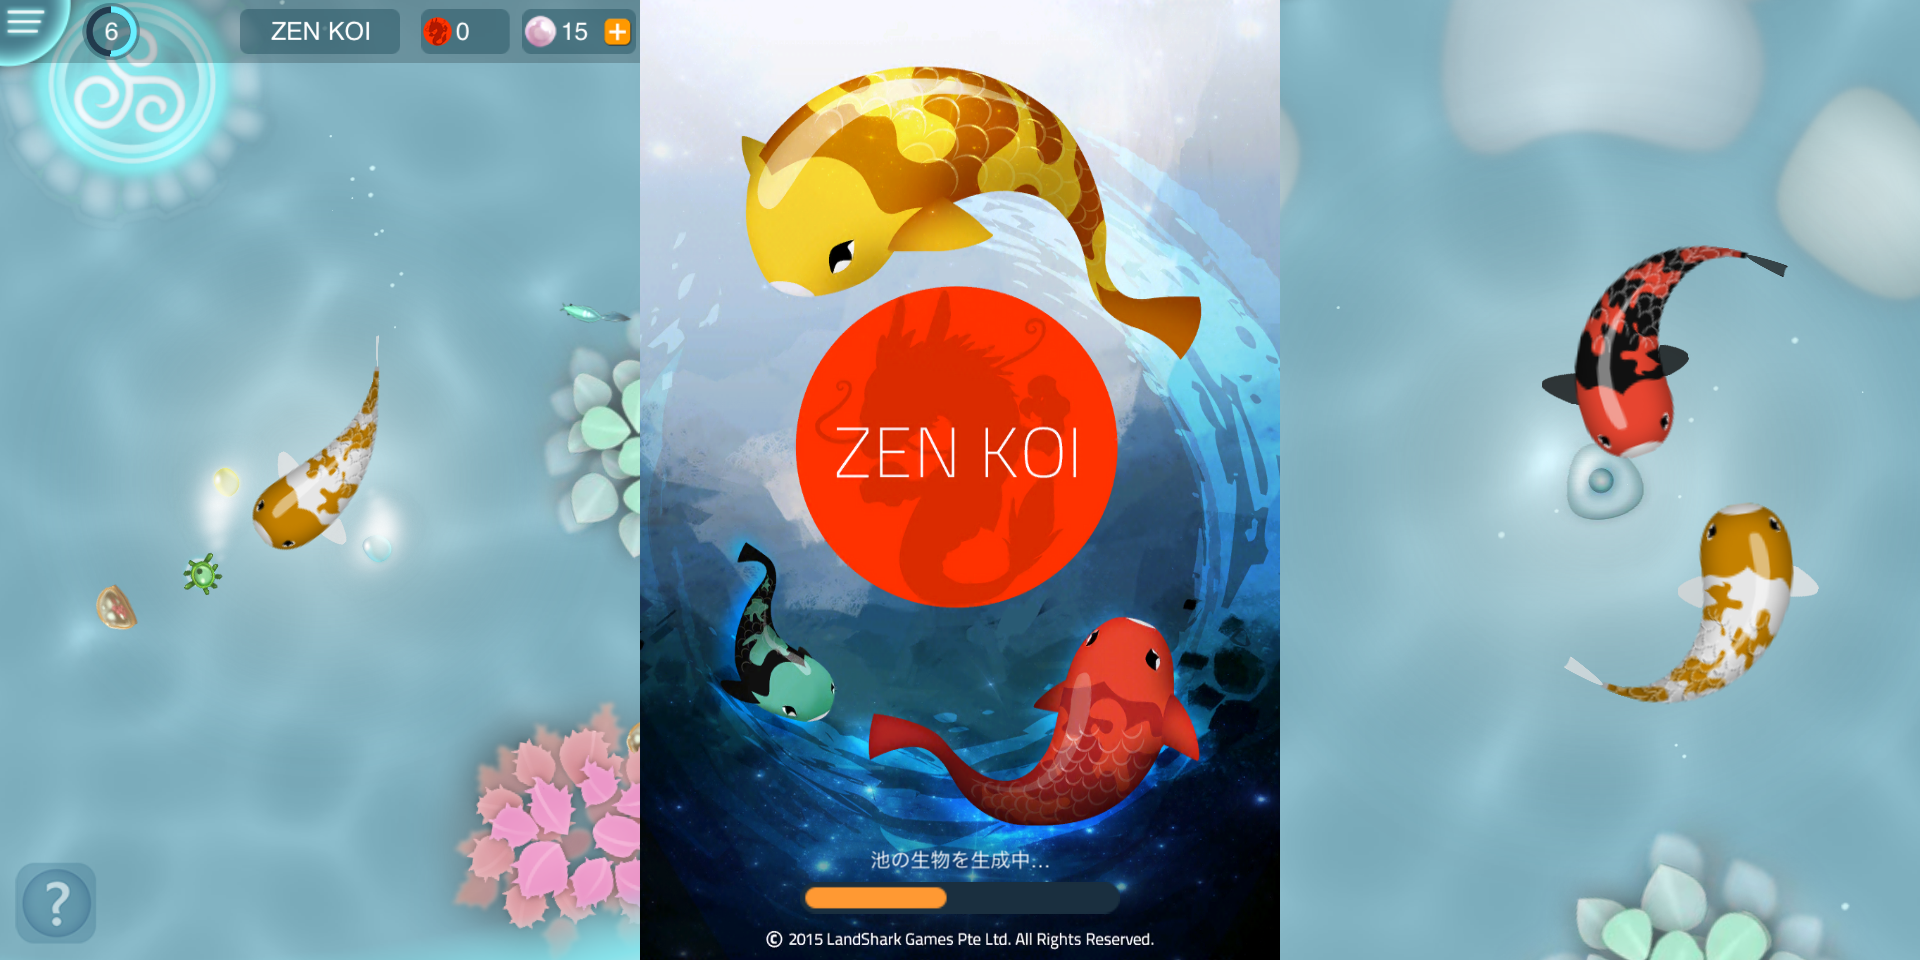 Zen Koi - 禅の鯉 - 静かな水の中の旅イメージ